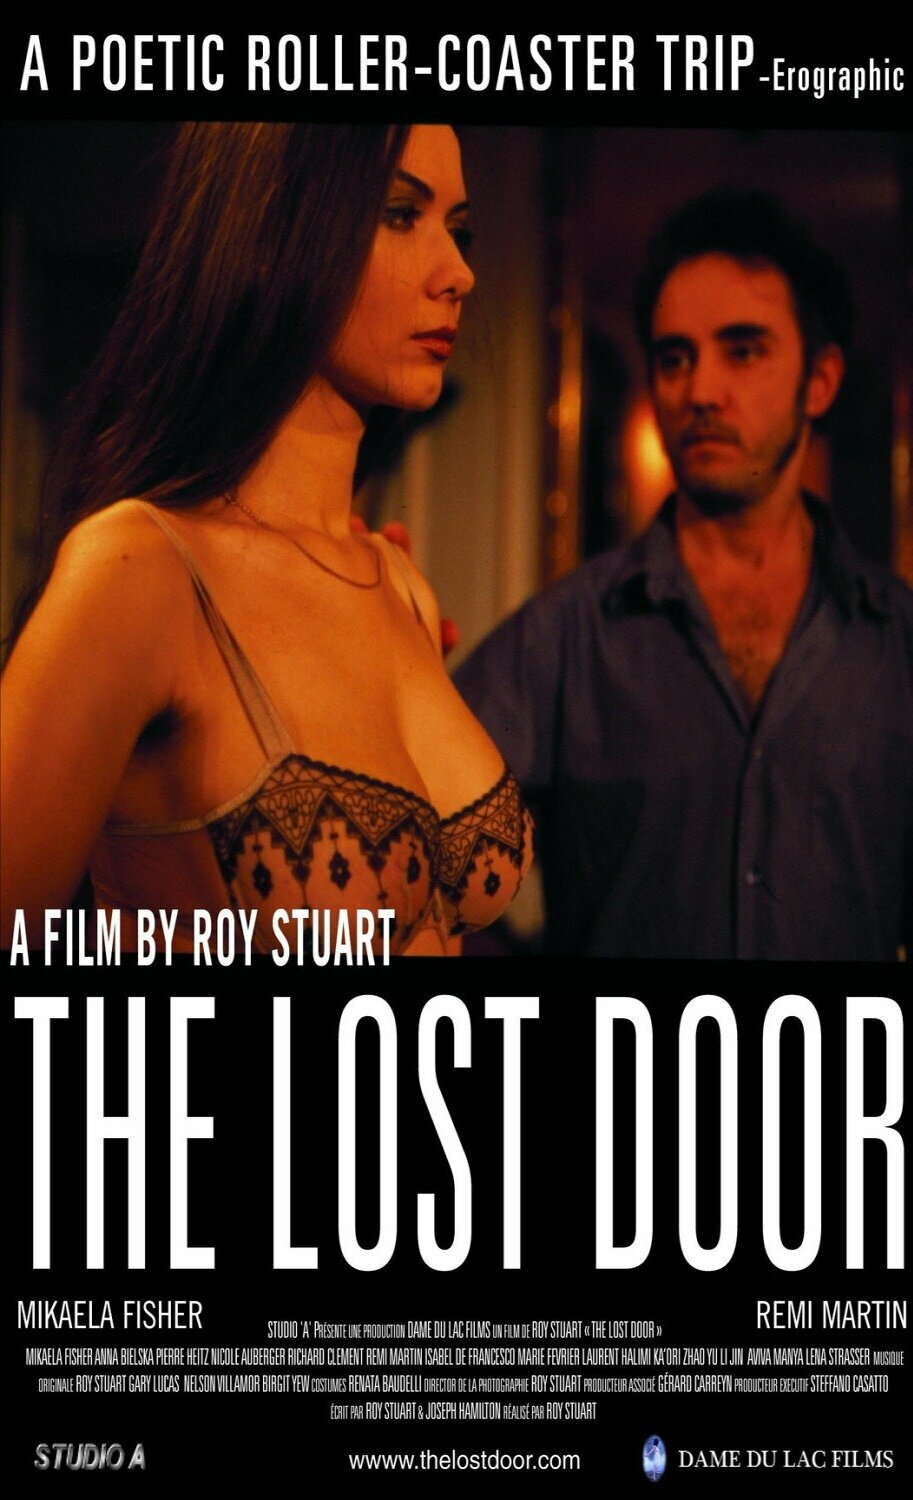 The lost door